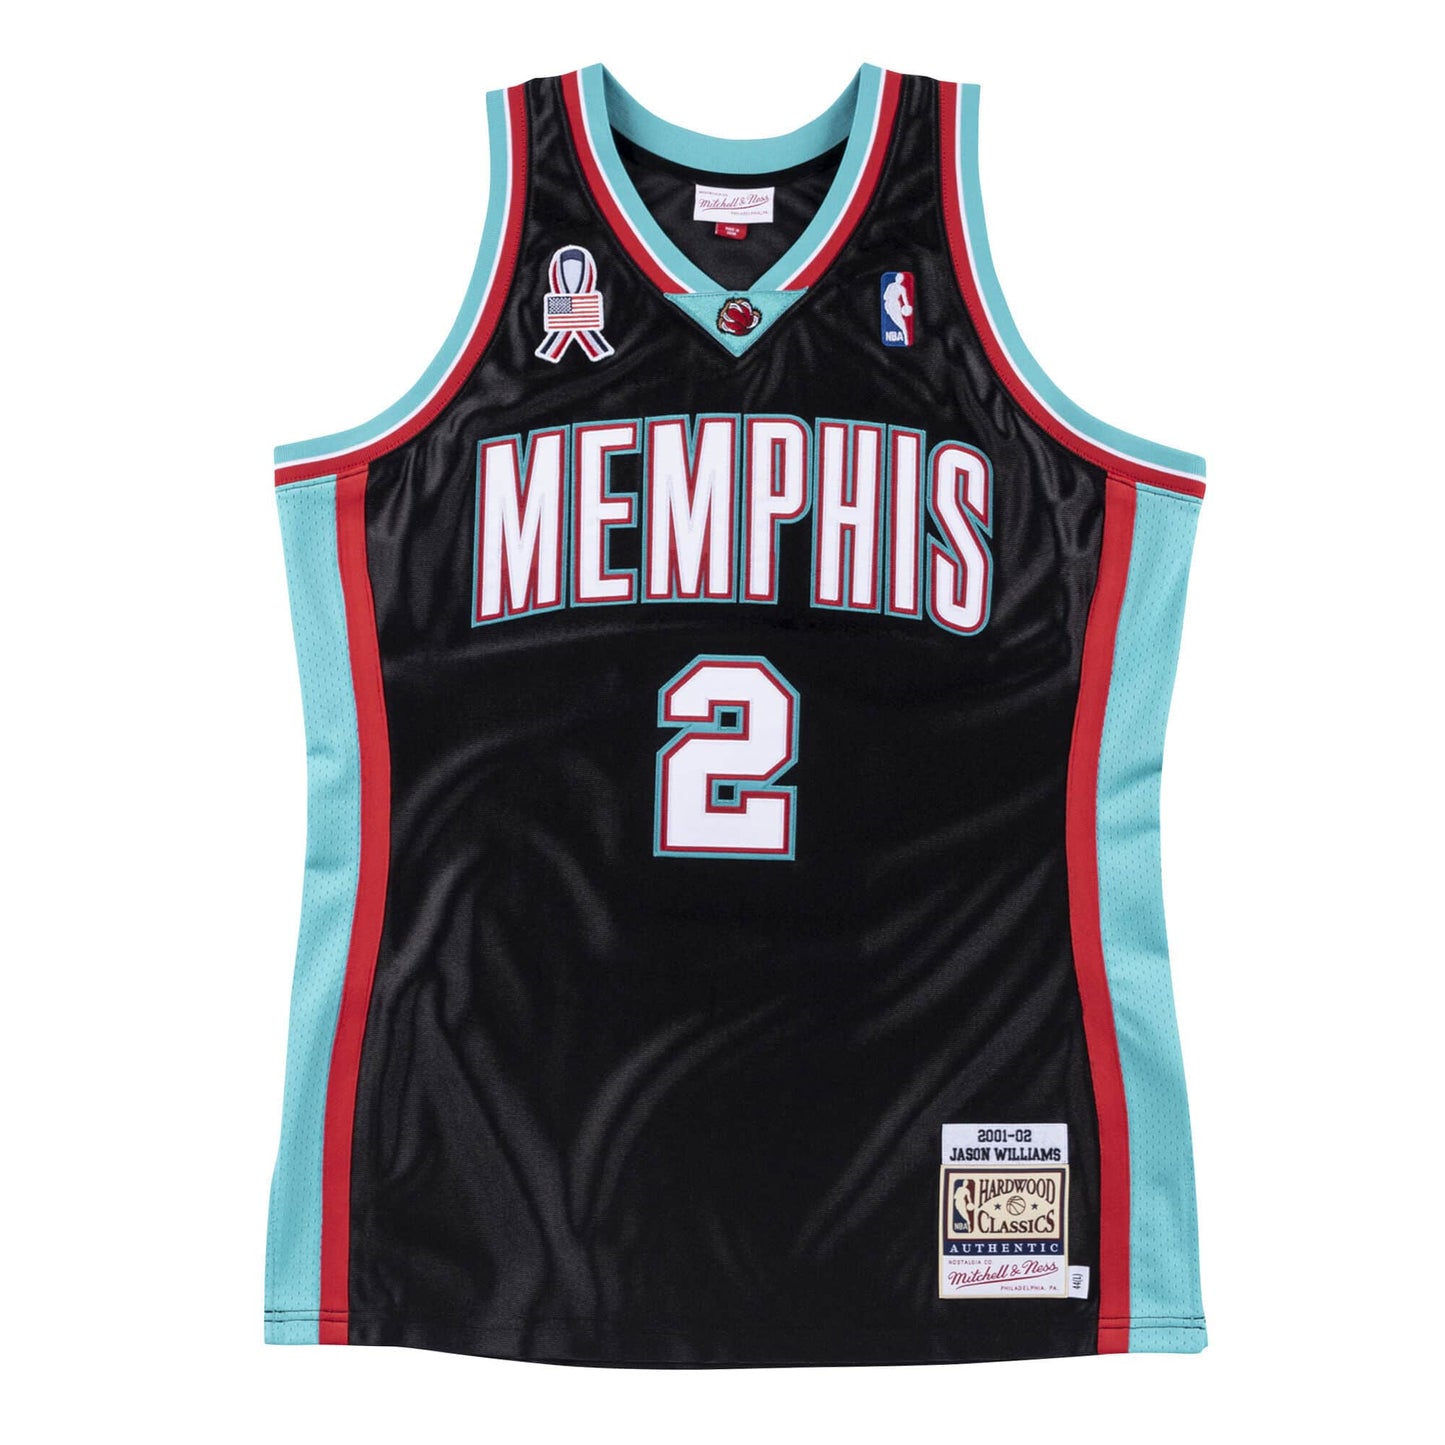 Authentic Jersey Memphis Grizzlies 2001-02 Jason Williams